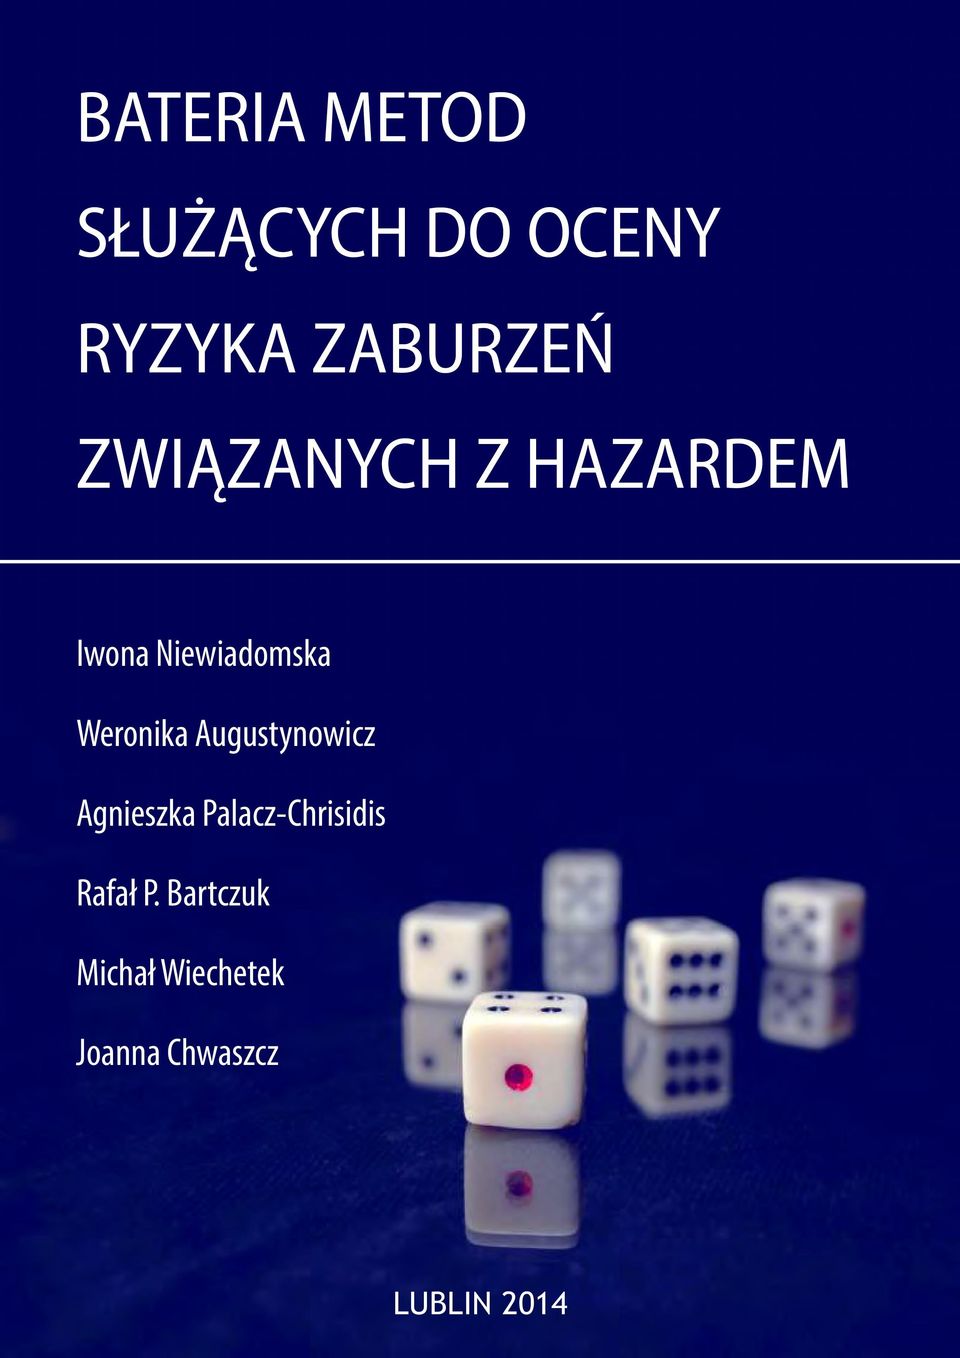 Augustynowicz Agnieszka Palacz-Chrisidis Rafał P.